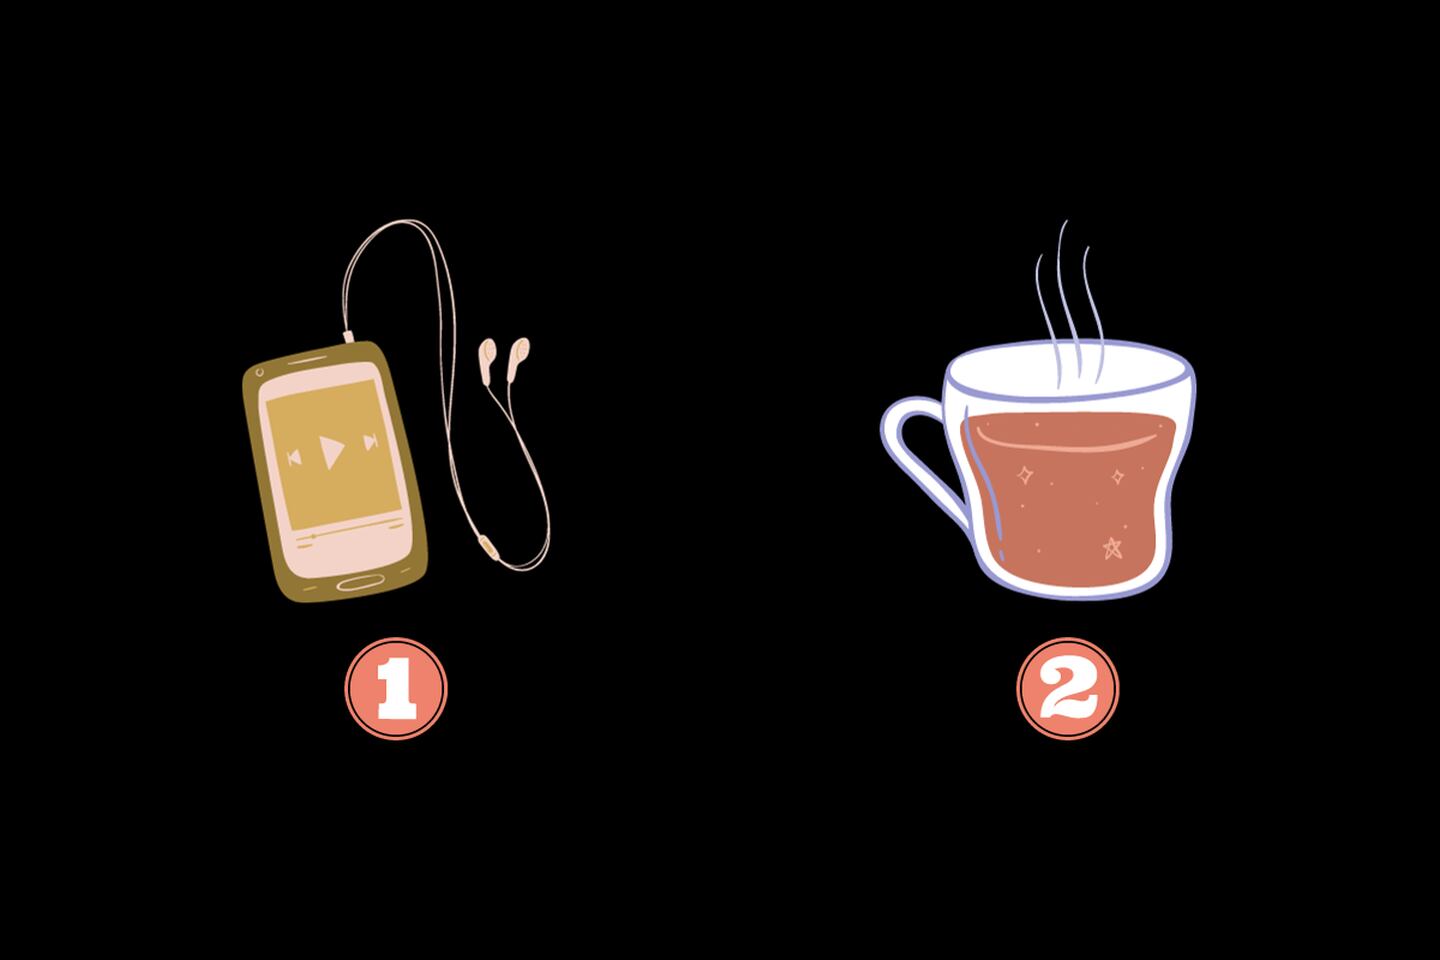 En este test de personalidad hay dos opciones: un aparato para escuchar música y una taza de café.